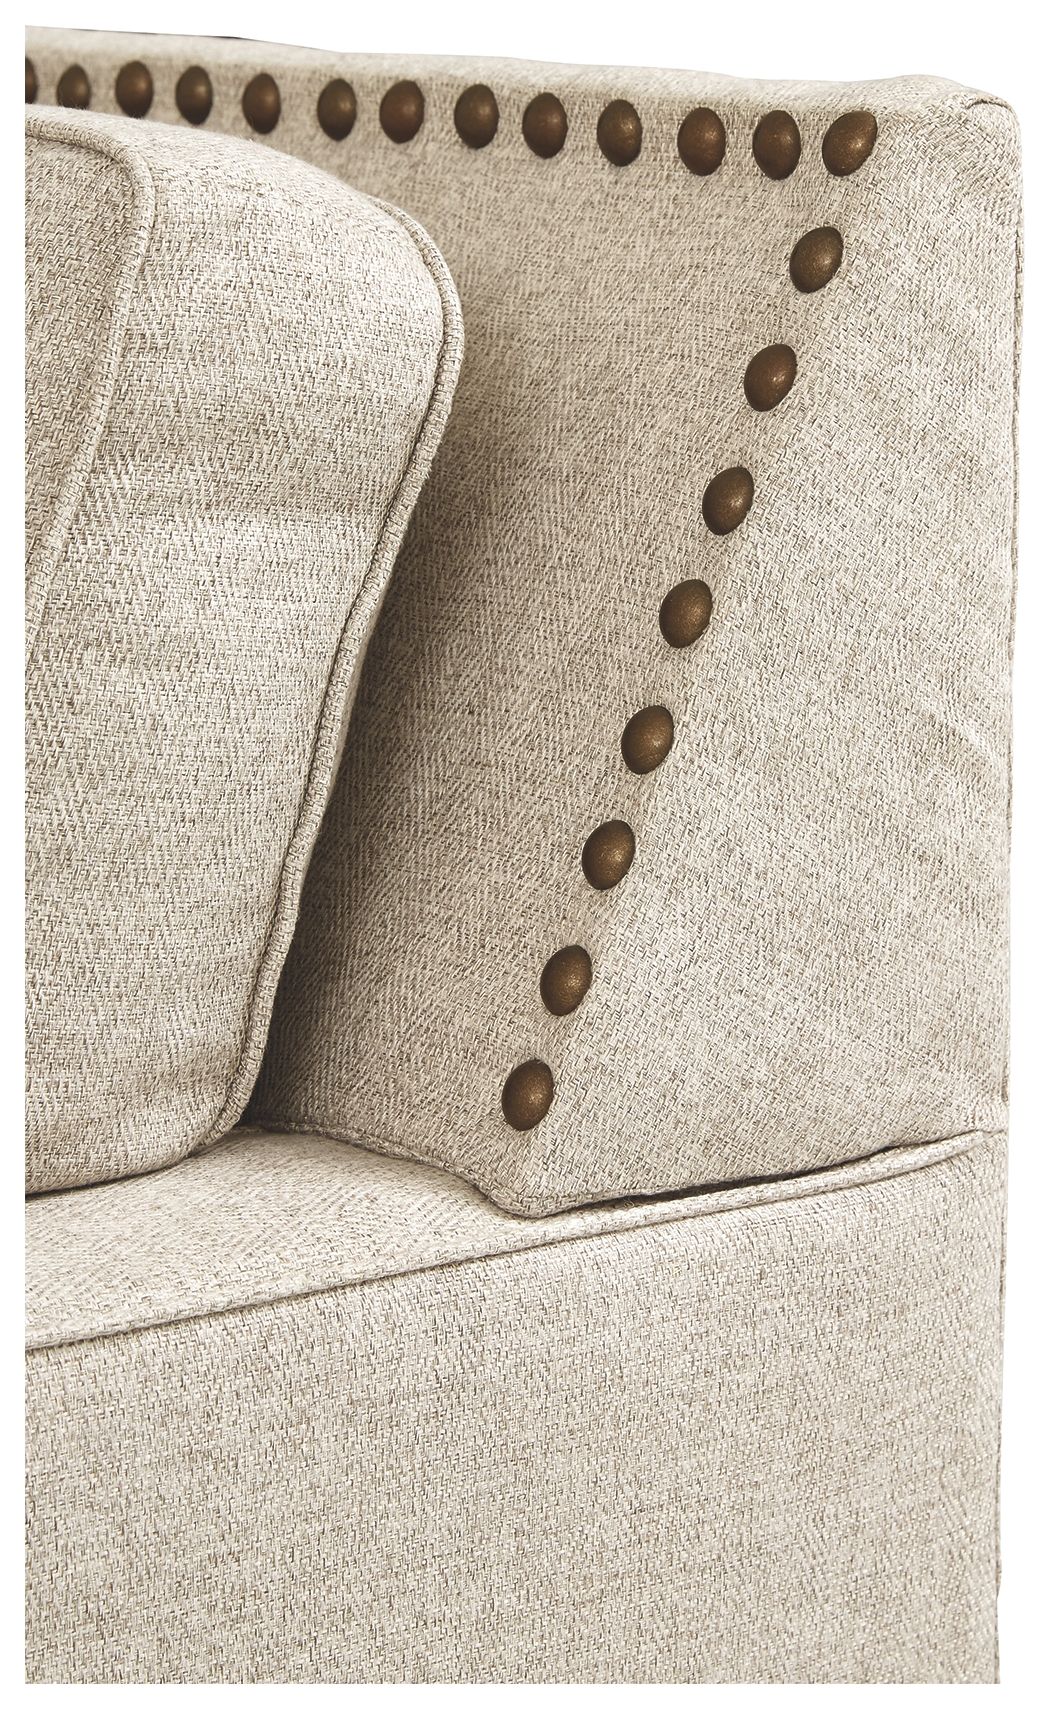 Claredon - Linen - Sofa